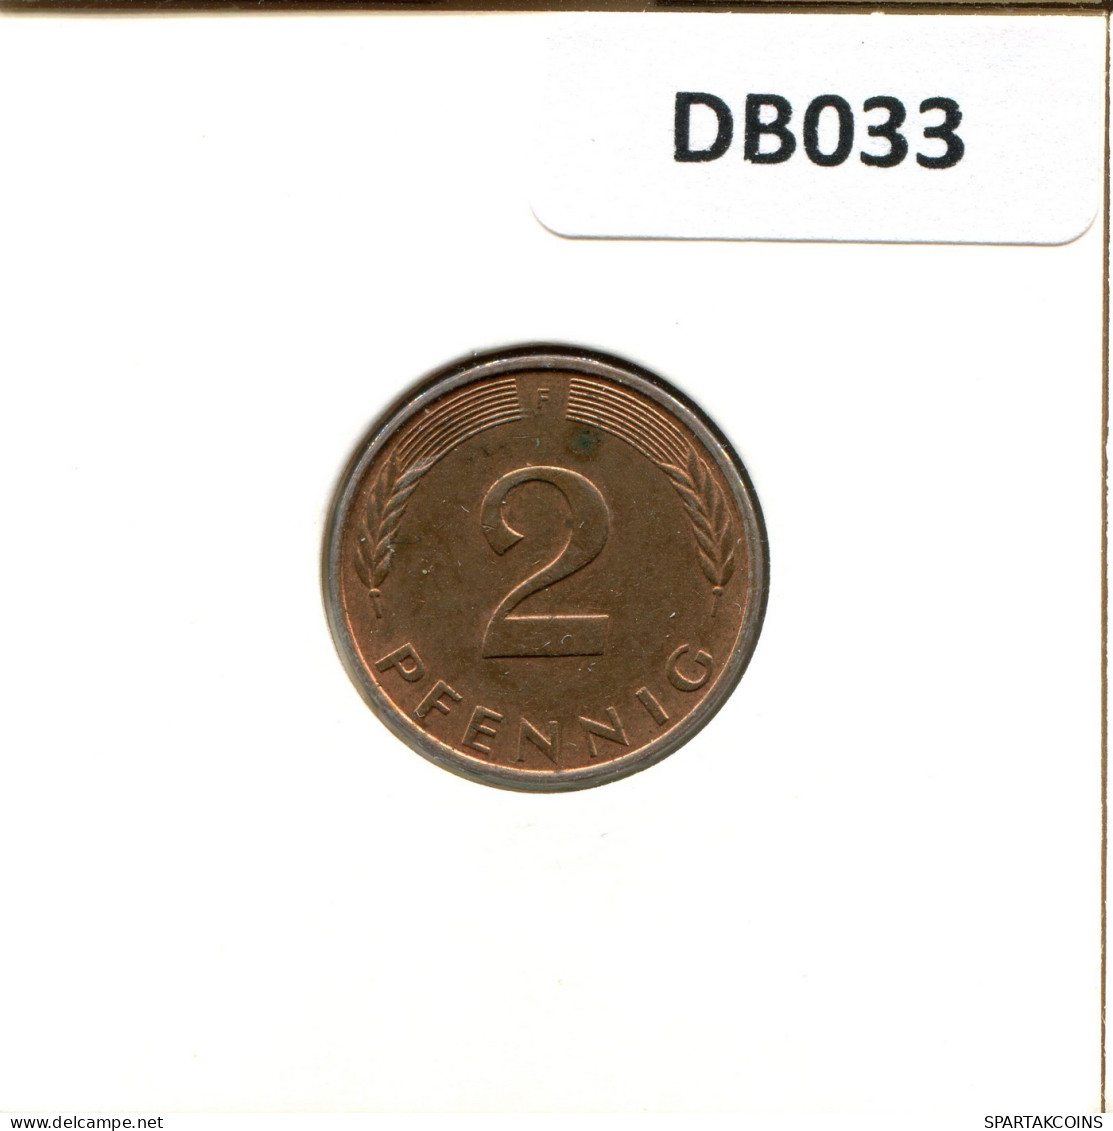 2 PFENNIG 1984 F WEST & UNIFIED GERMANY Coin #DB033.U.A - 2 Pfennig